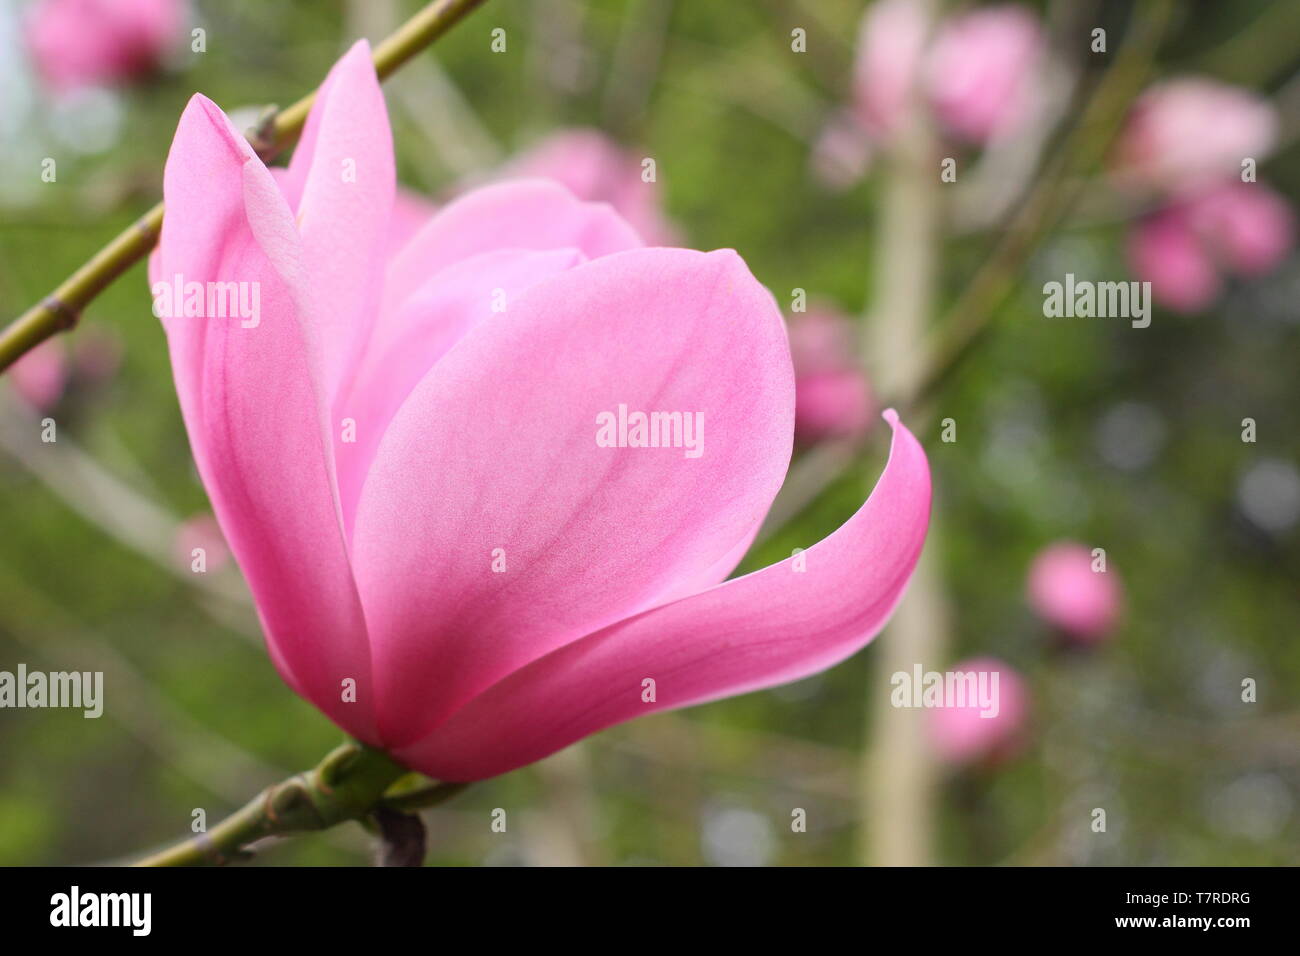 Magnolia sprengeri var. diva " Copeland Corte". Vivid zucchero filato rosa fiori di magnolia 'Copeland corte" in primavera . AGM. Regno Unito Foto Stock